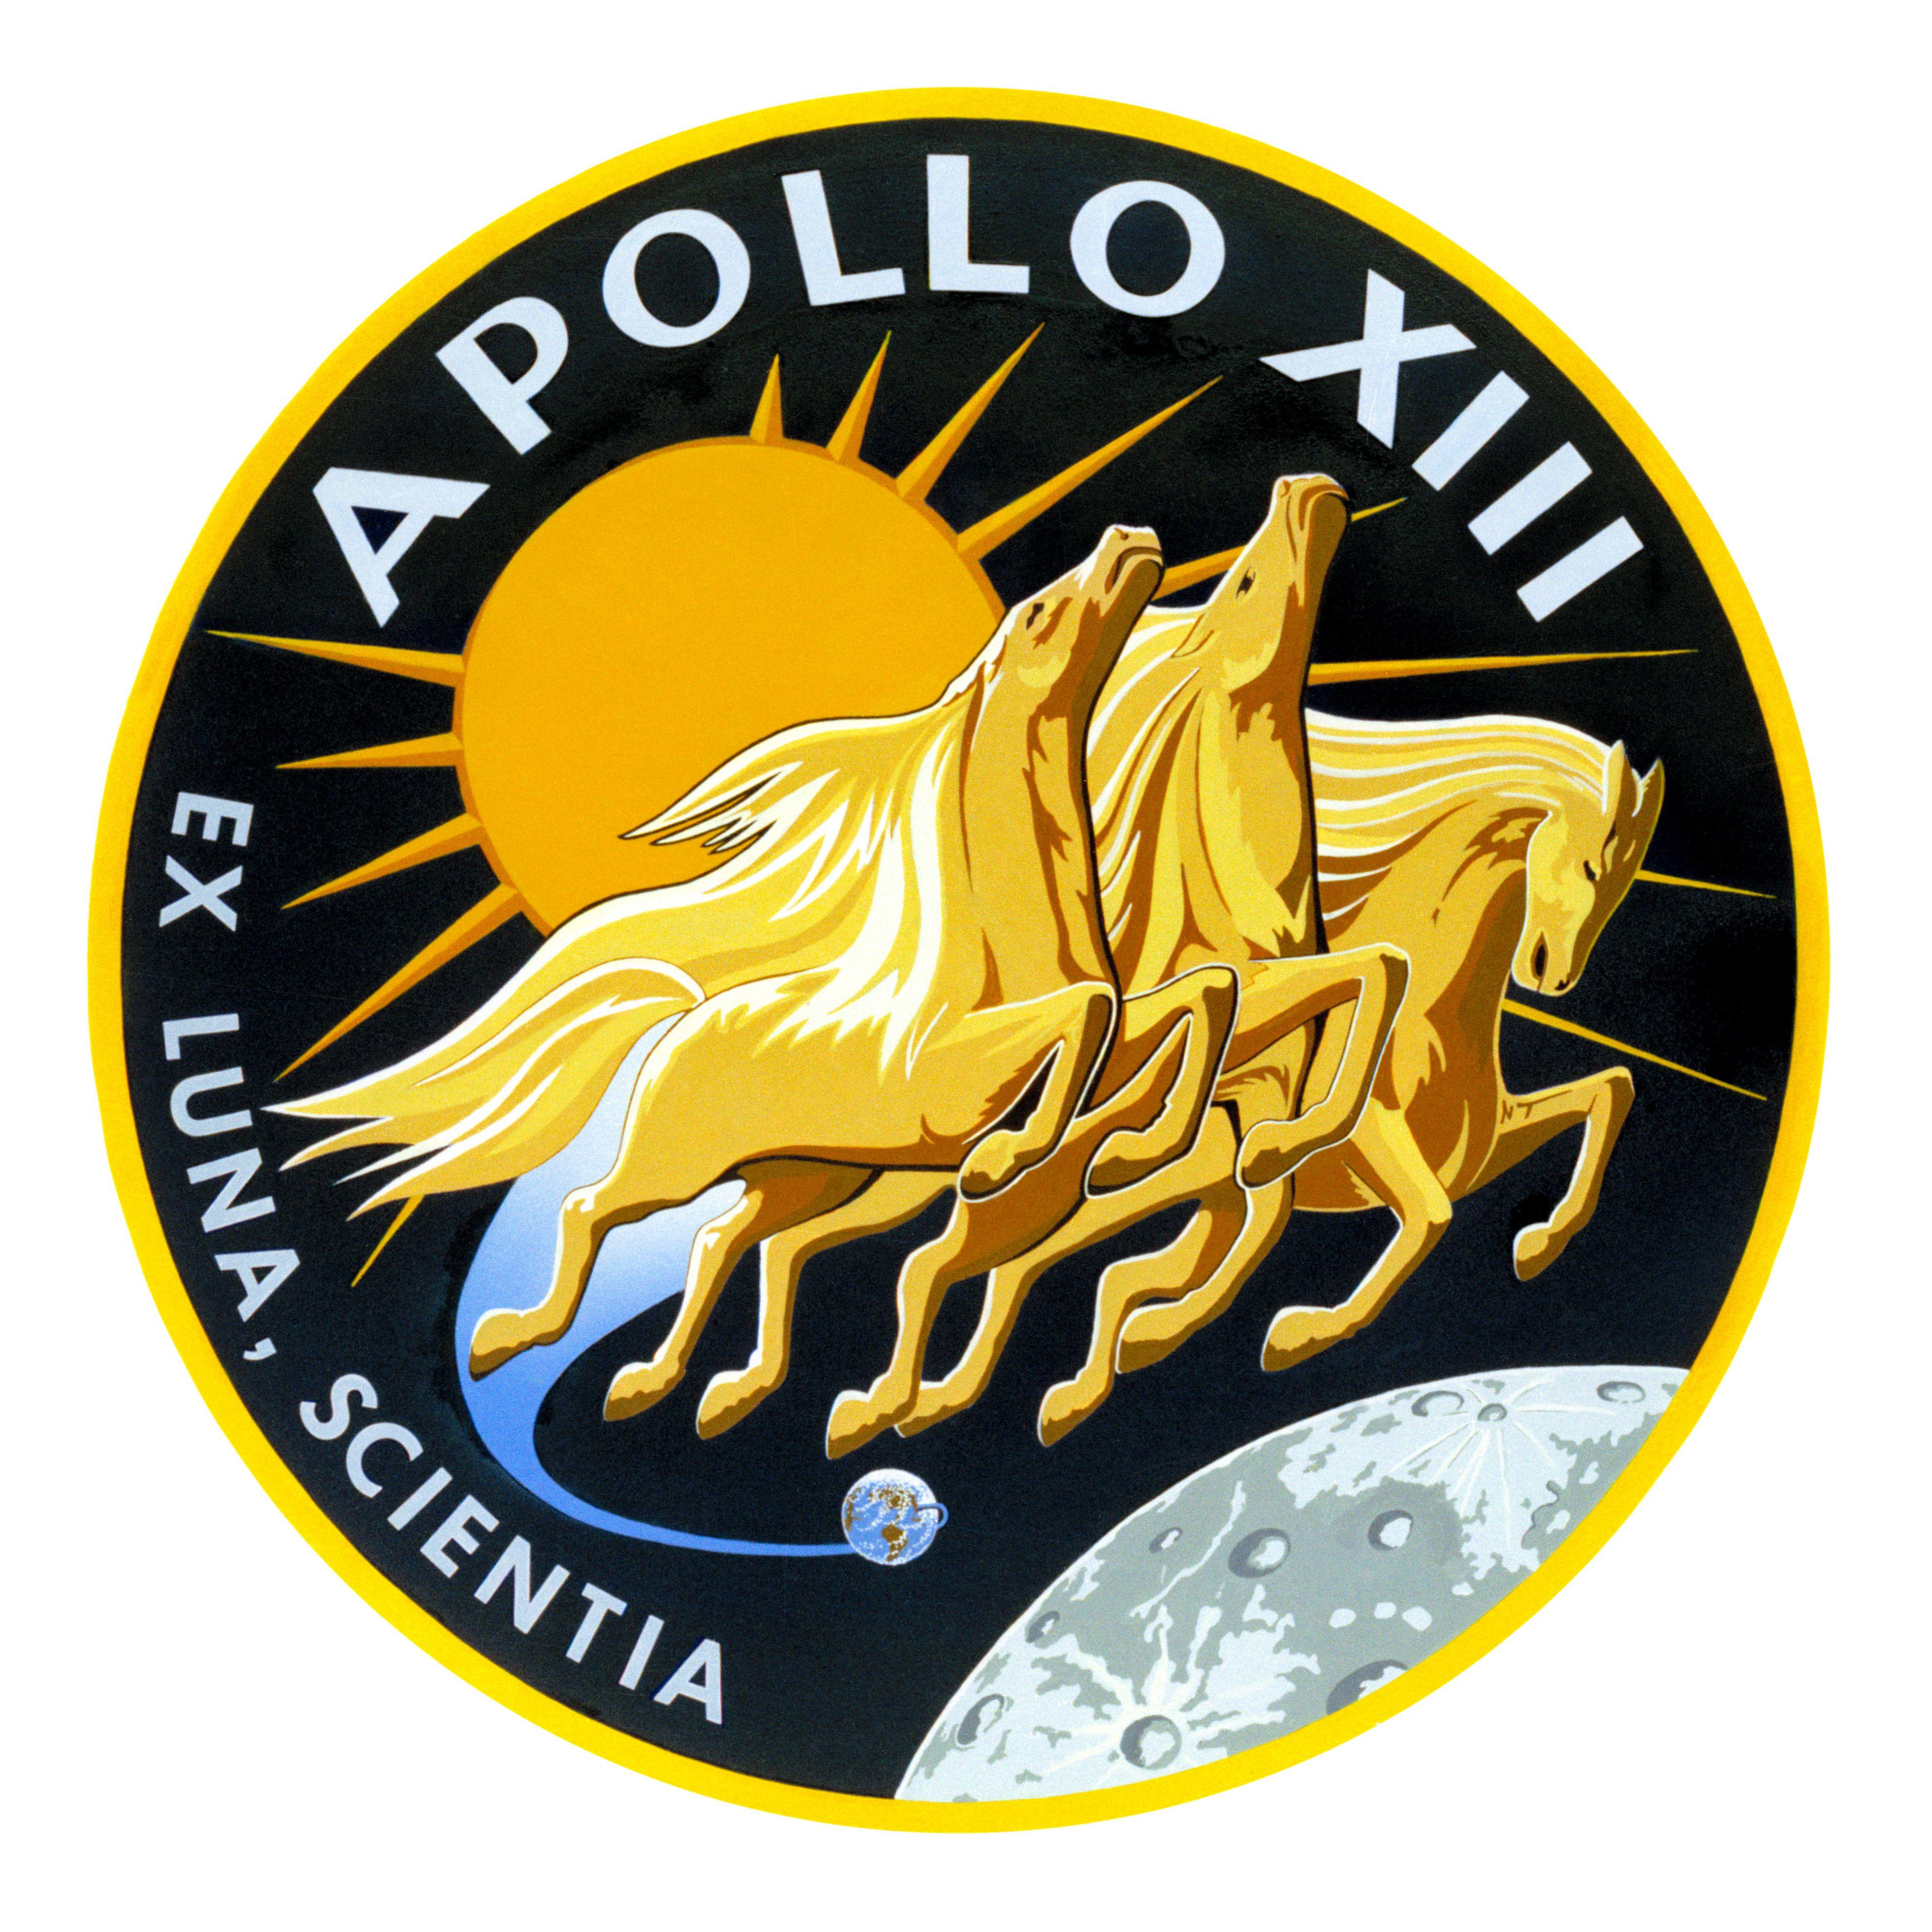 NASA Mission Logo - Apollo 13 Emblem | NASA Image and Video Library